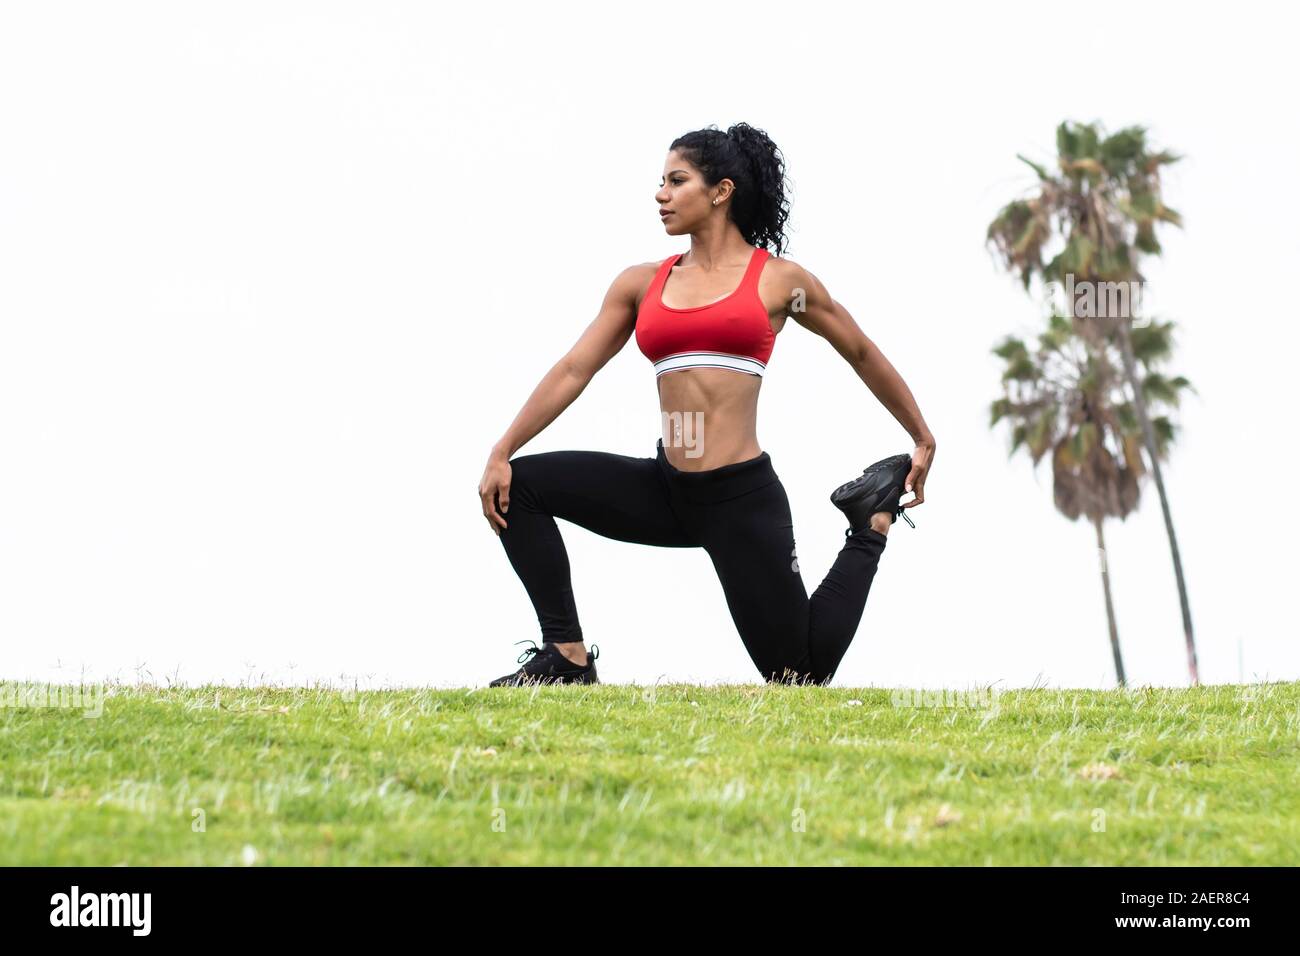 L'athlète de Latina exécute quatre stretch plein air portant des leggings de fitness et un soutien-gorge de sport rouge avec des palmiers en arrière-plan Banque D'Images